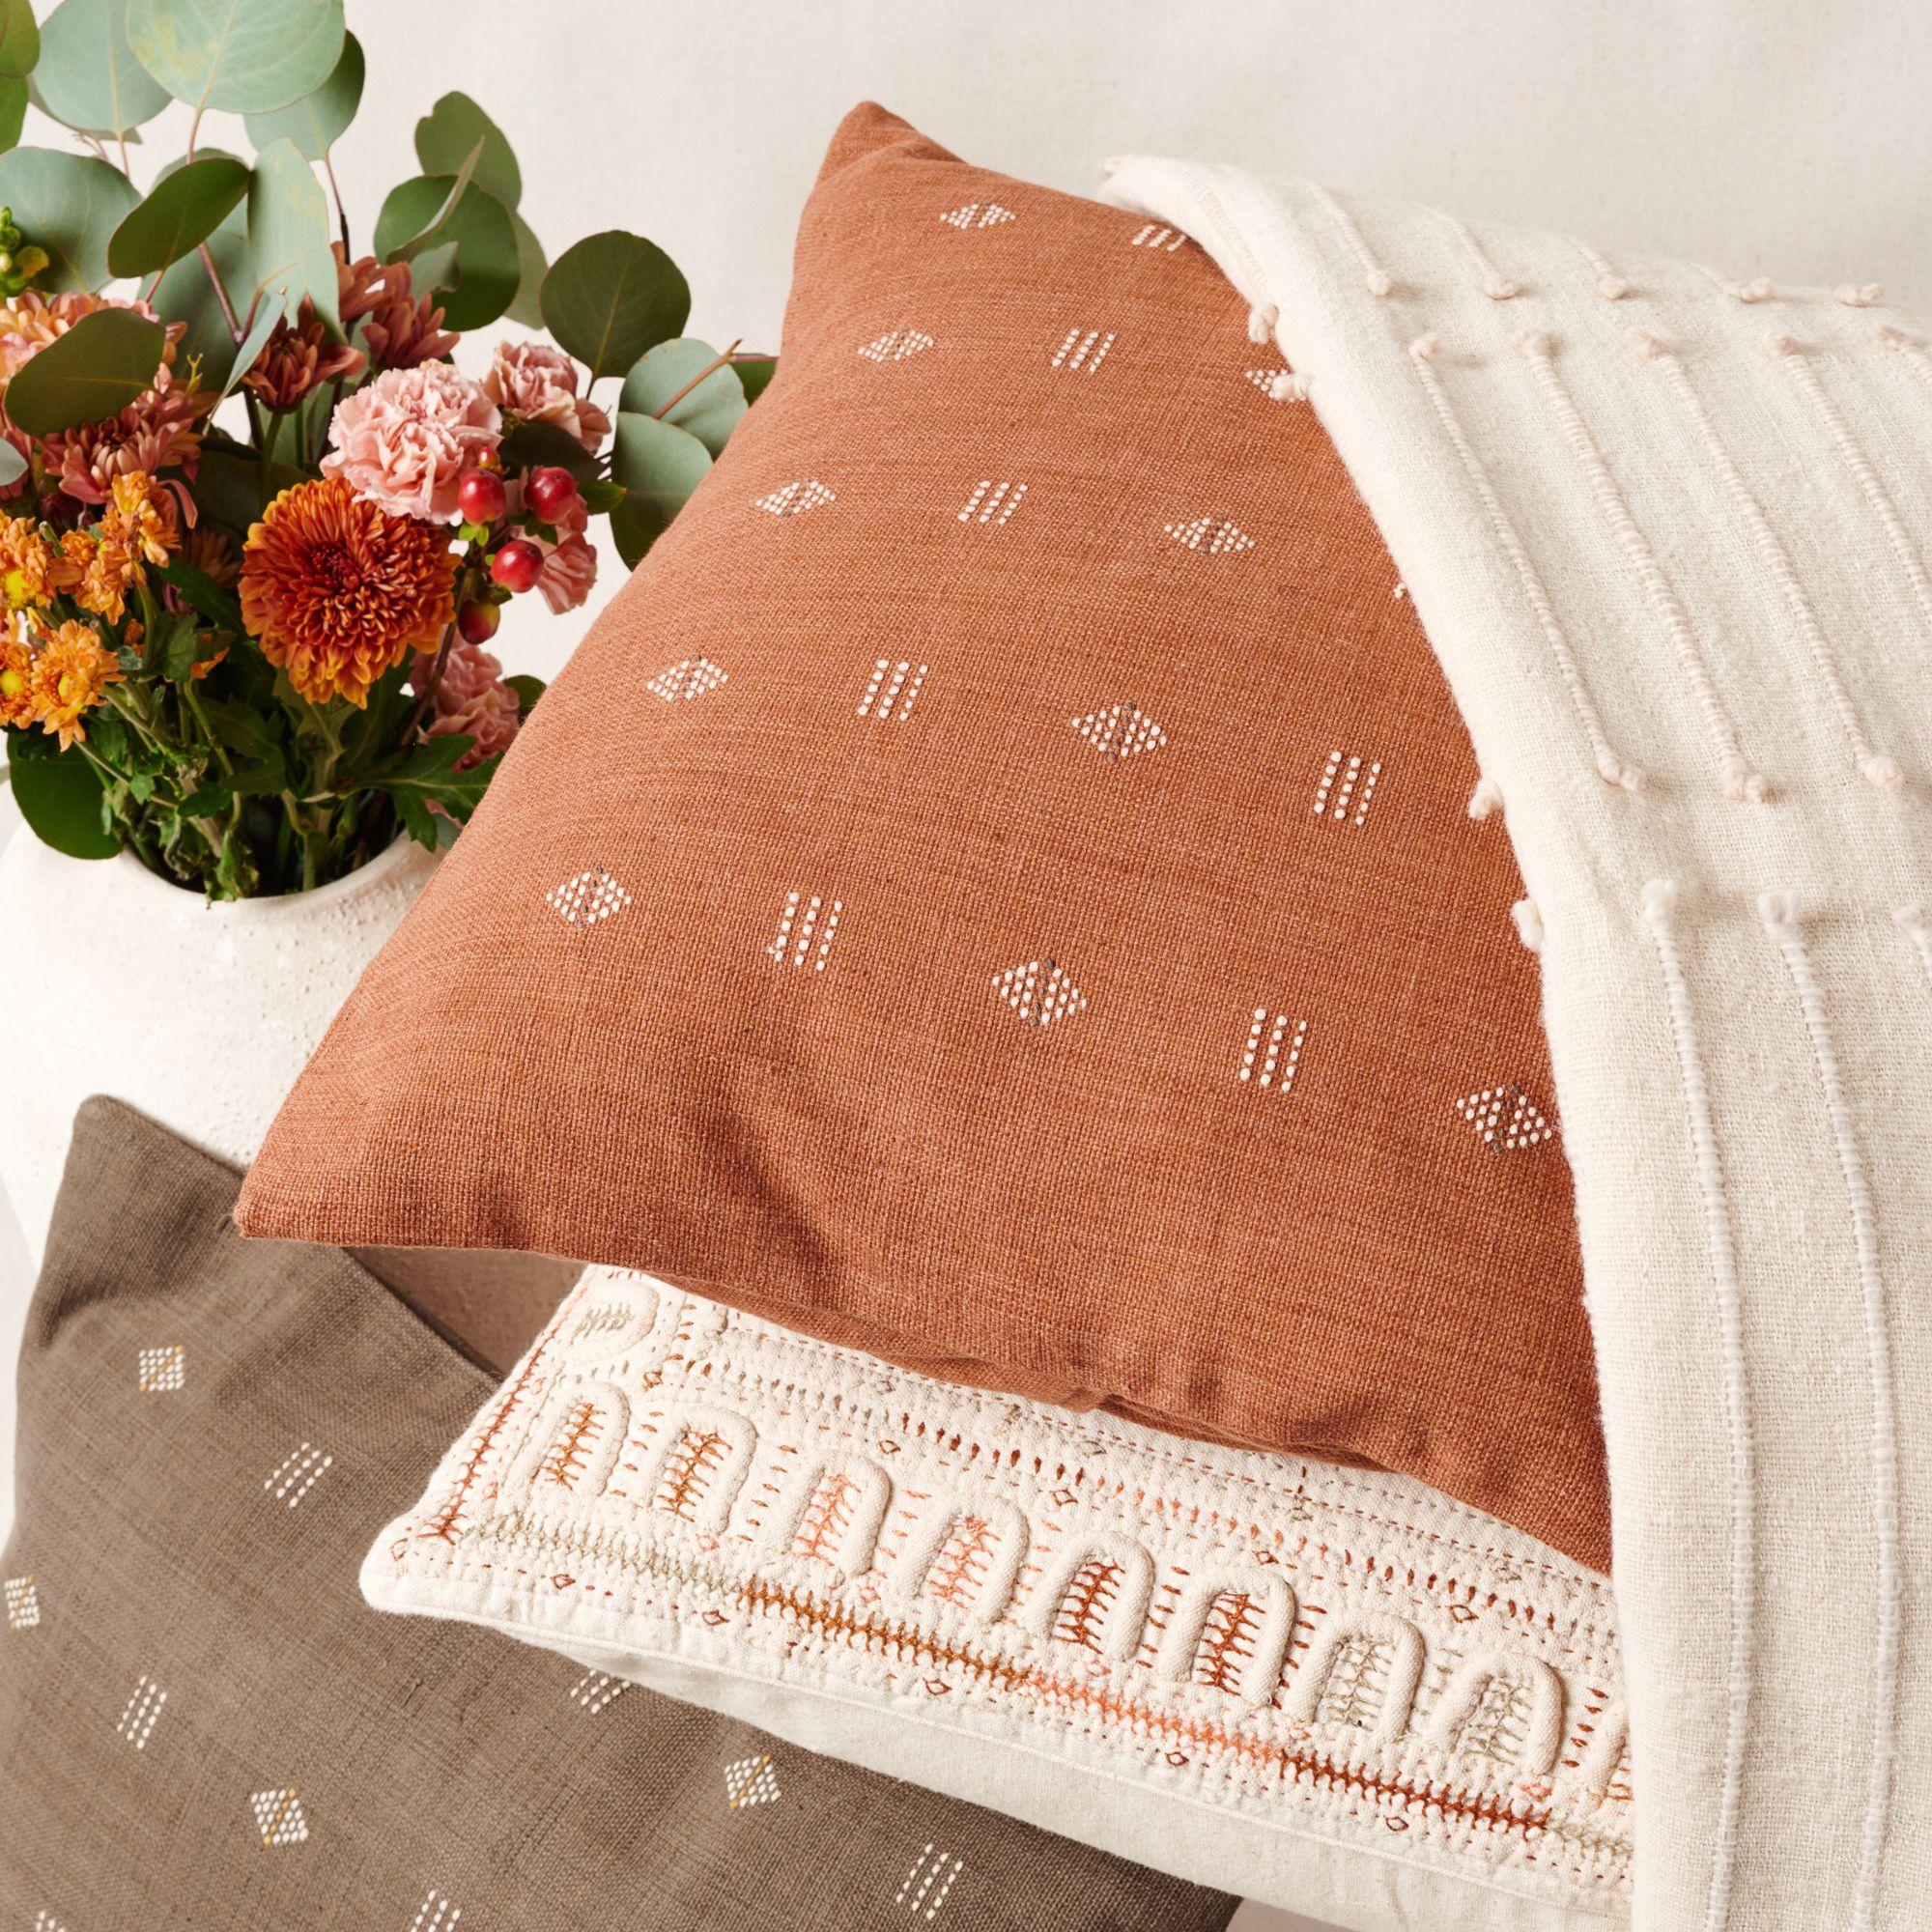 Nira Brown Pillow ist ein leicht strukturiertes, handgewebtes Kissen, in dem unsere Kunsthandwerker mit einer alten Webtechnik ein klassisches Muster geschaffen haben. Undyed Garn wird als Designelement verwendet, das von angenehmen